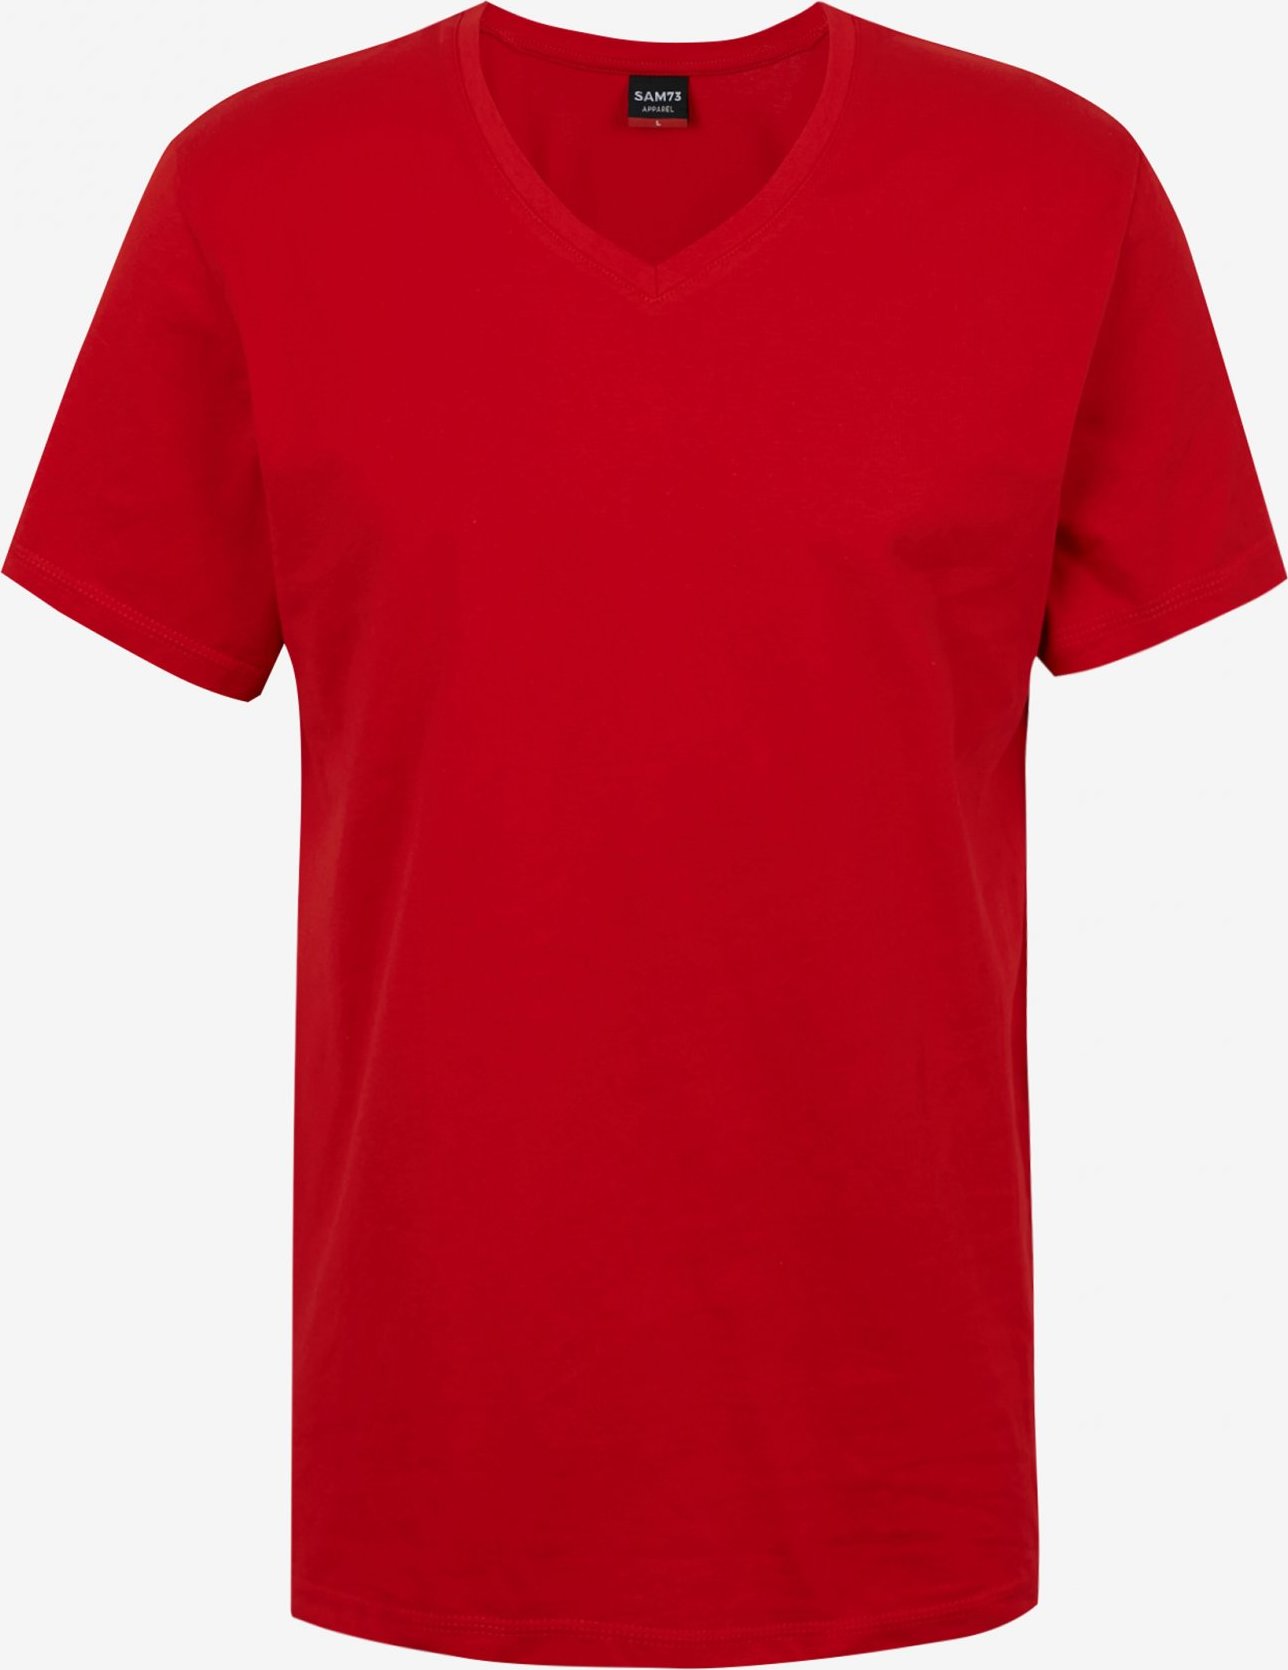 Pánské triko SAM73 blane červené Velikost: XL